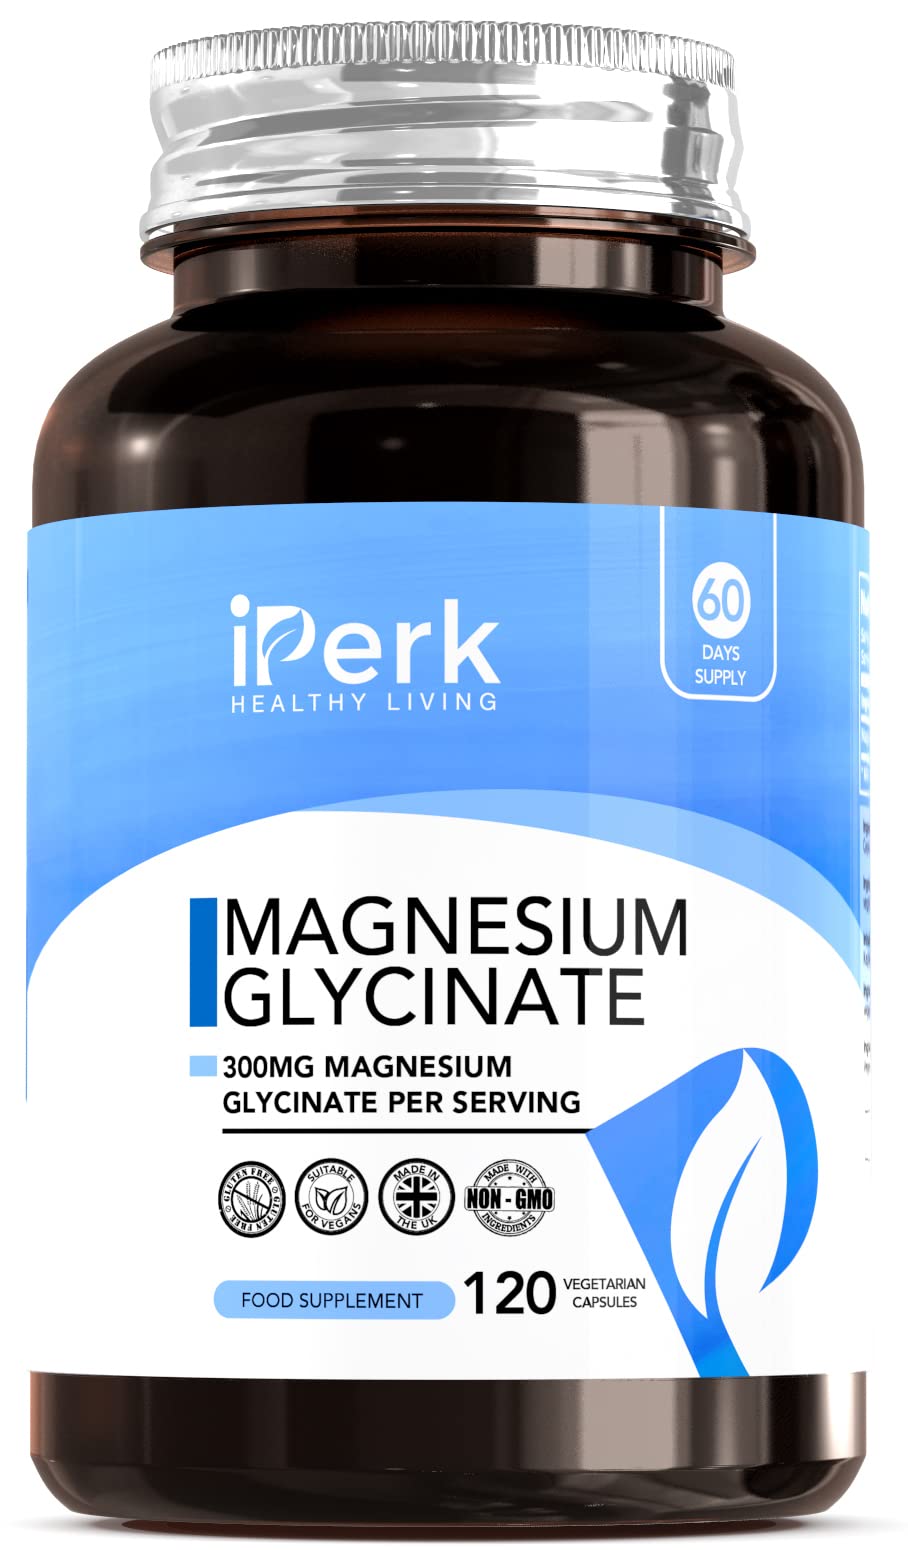 [Australia] - Magnesium Glycinate Capsules Provide 300 mg of Pure Elemental Magnesium Per Serving 120 Vegan Caps | Magnesium Supplement Non GMO, Dairy & Gluten Free 120 Count (Pack of 1) 